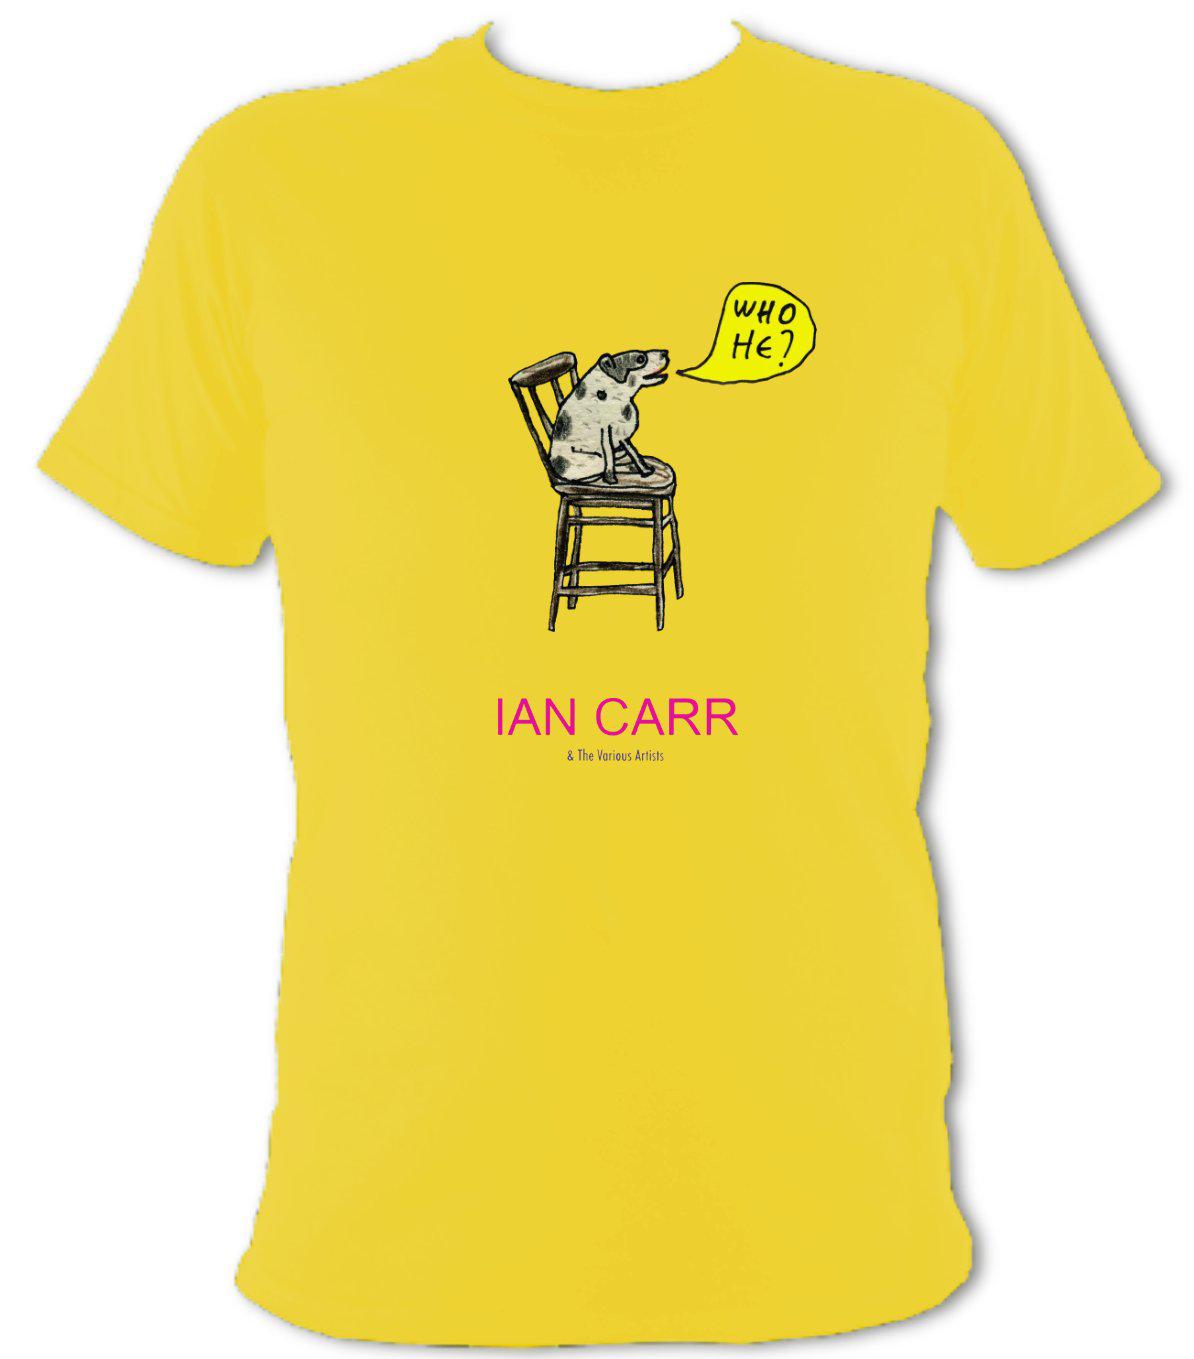 Ian Carr - "Who He?" T-shirt - T-shirt - Daisy - Mudchutney